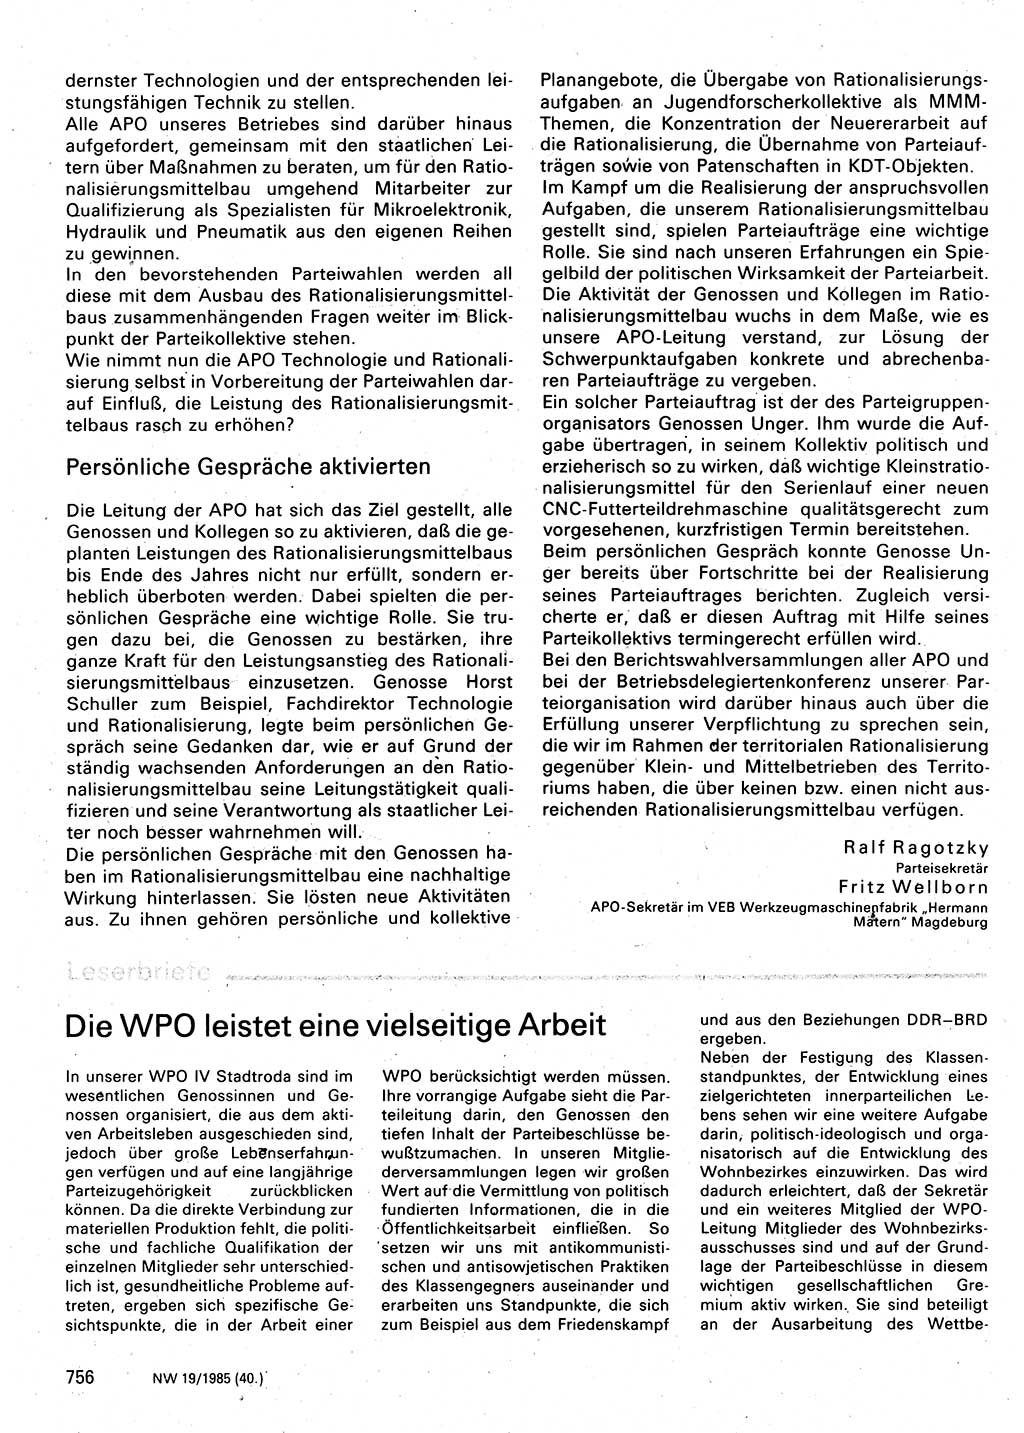 Neuer Weg (NW), Organ des Zentralkomitees (ZK) der SED (Sozialistische Einheitspartei Deutschlands) für Fragen des Parteilebens, 40. Jahrgang [Deutsche Demokratische Republik (DDR)] 1985, Seite 756 (NW ZK SED DDR 1985, S. 756)